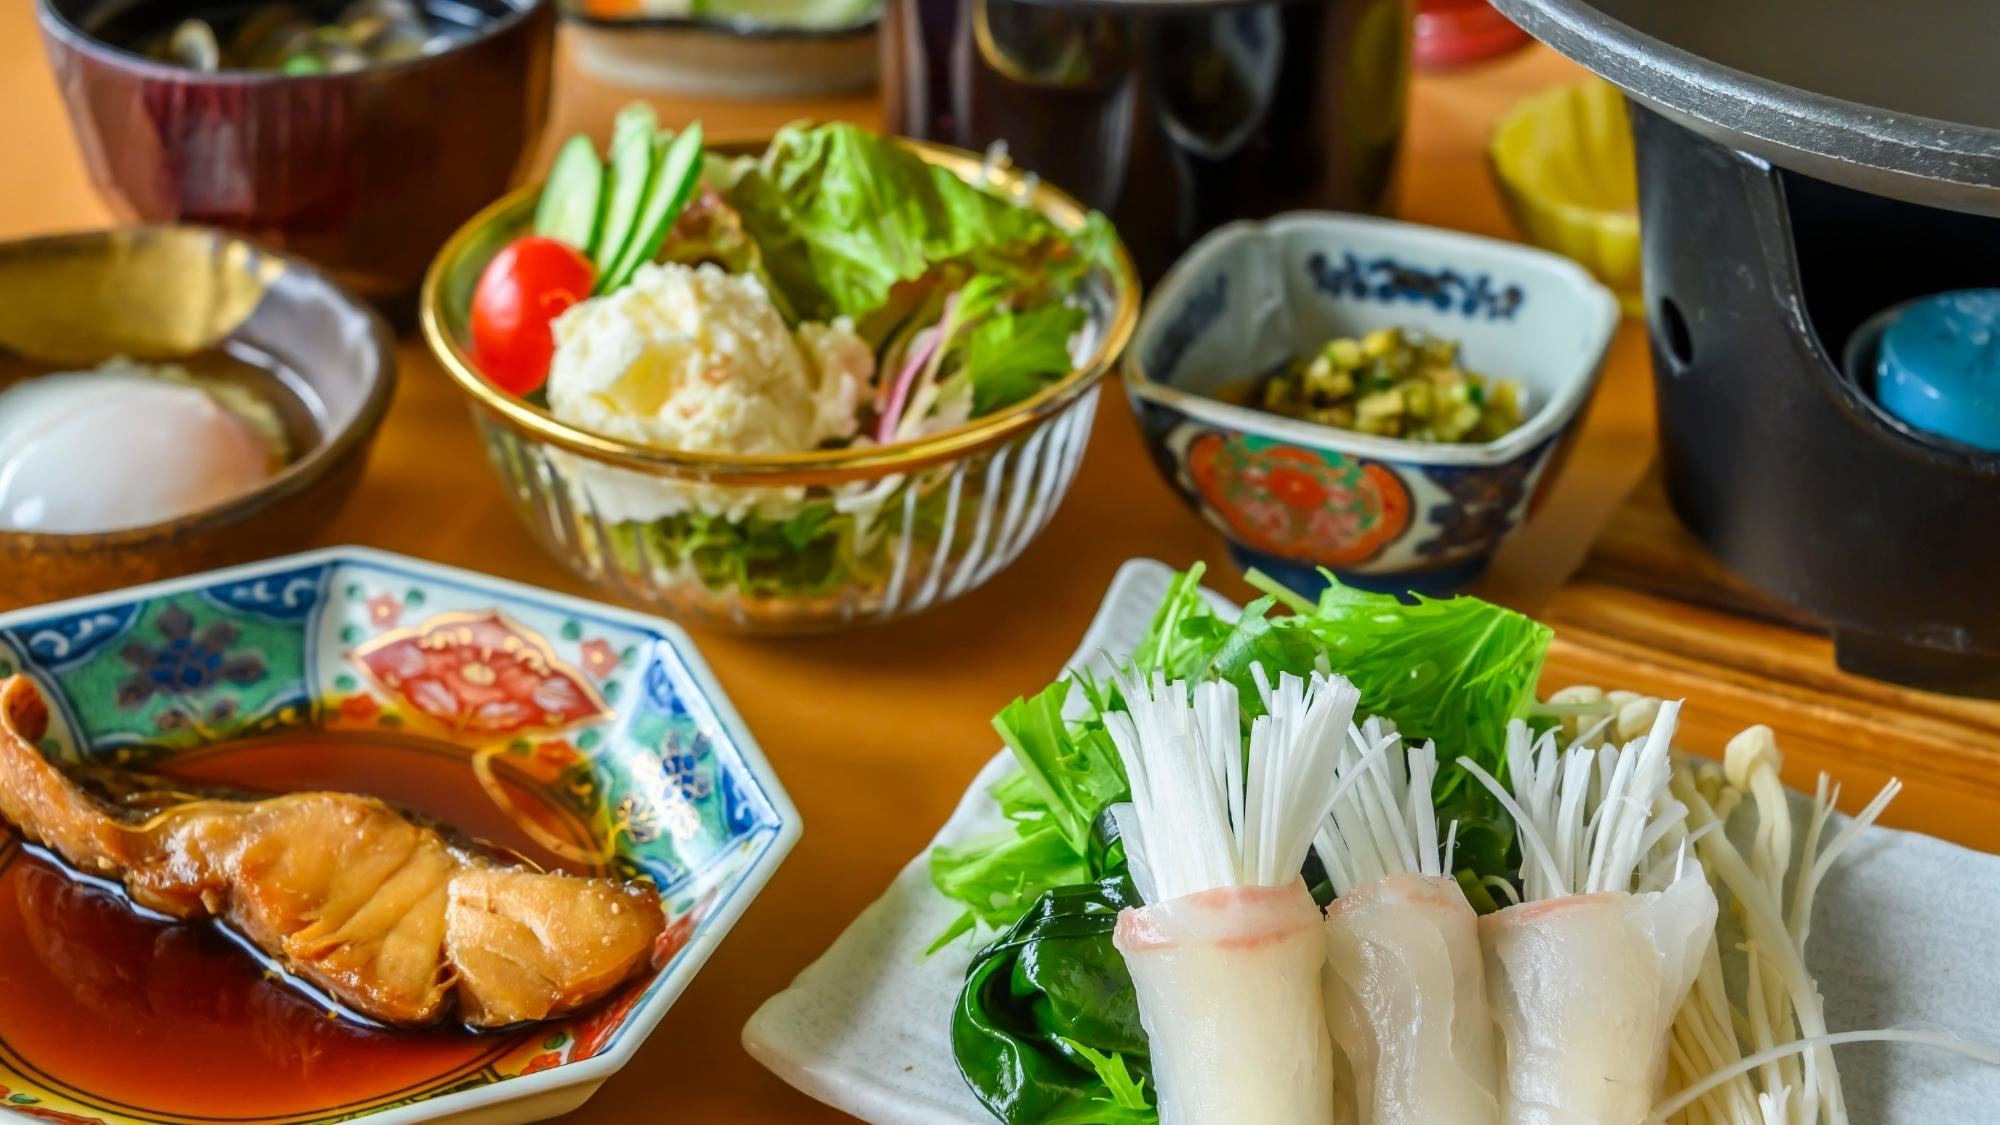 Hidangan utama untuk sarapan adalah ikan segar dan sayuran yang disajikan sebagai shabu panggang.